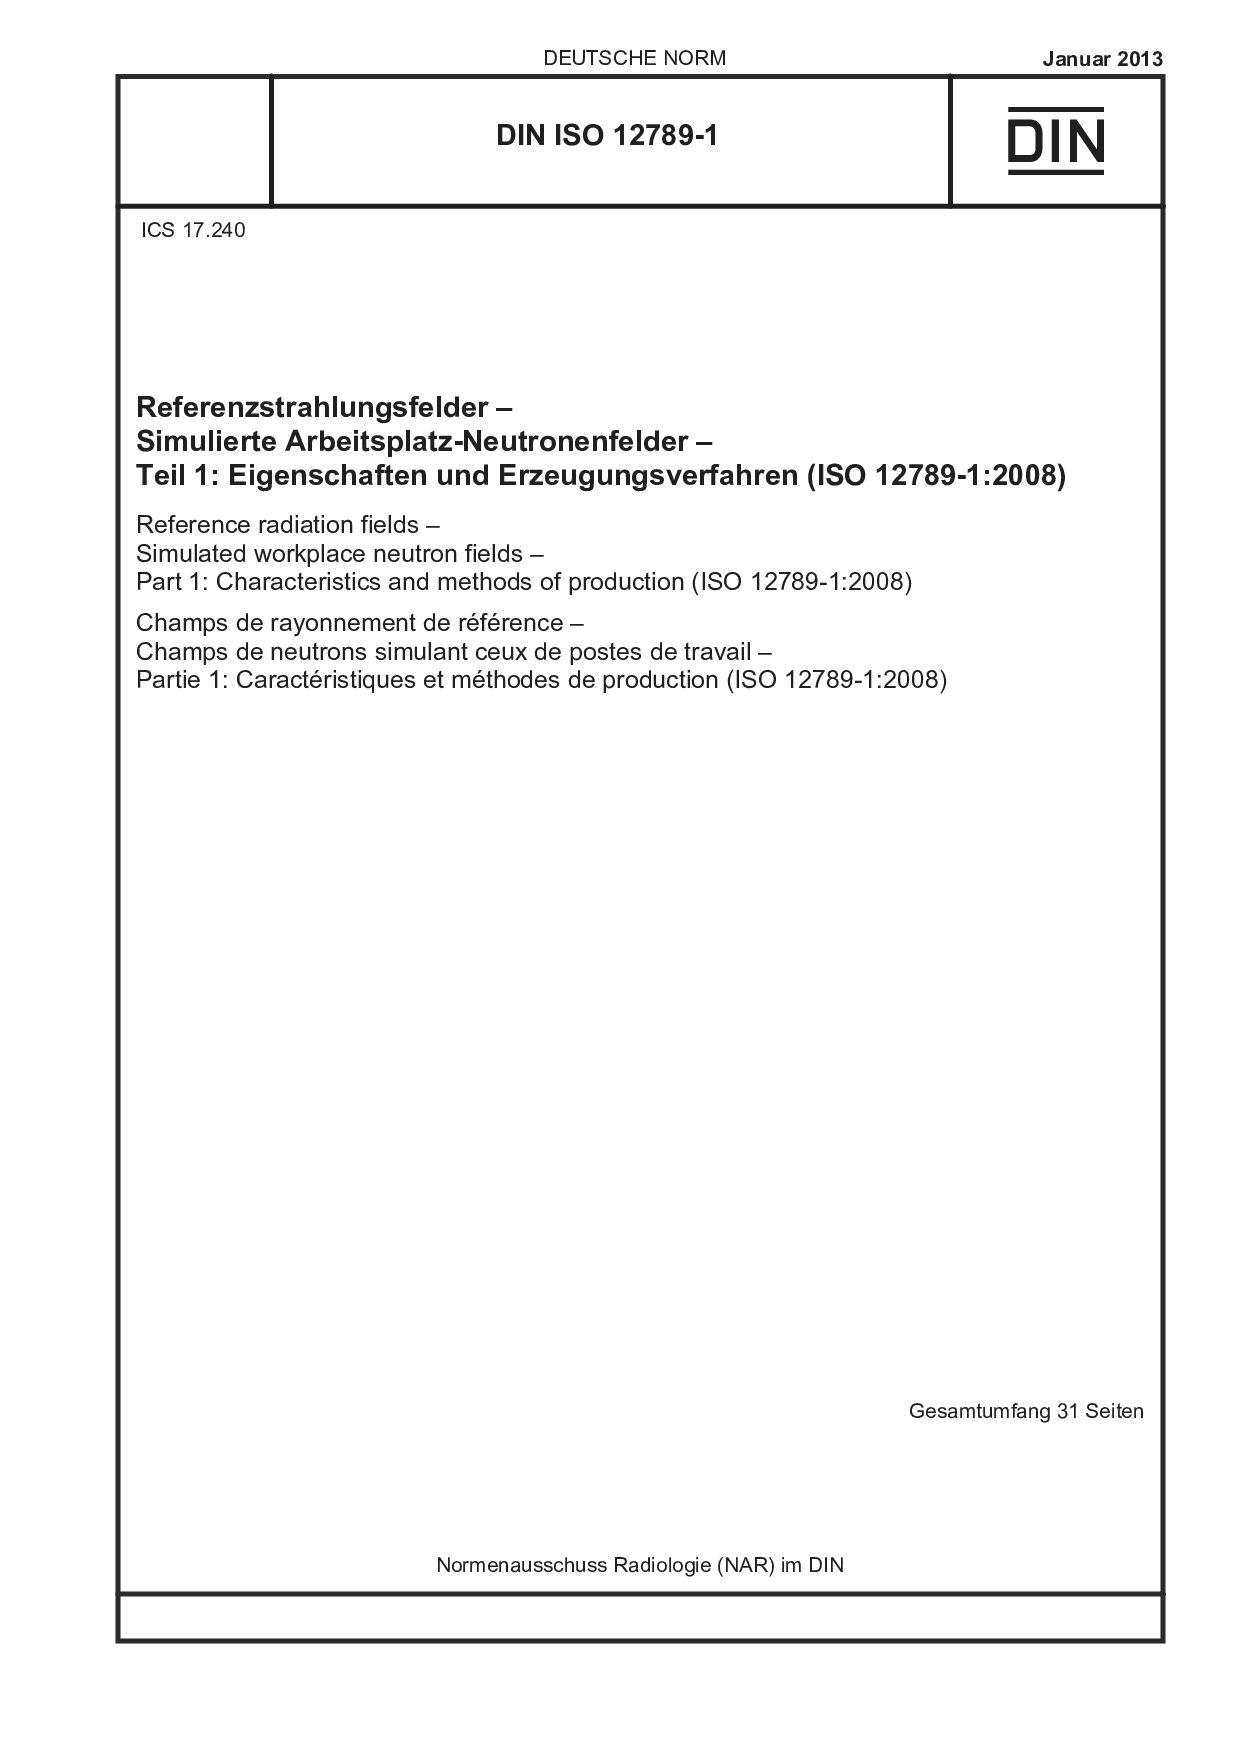 DIN ISO 12789-1:2013封面图